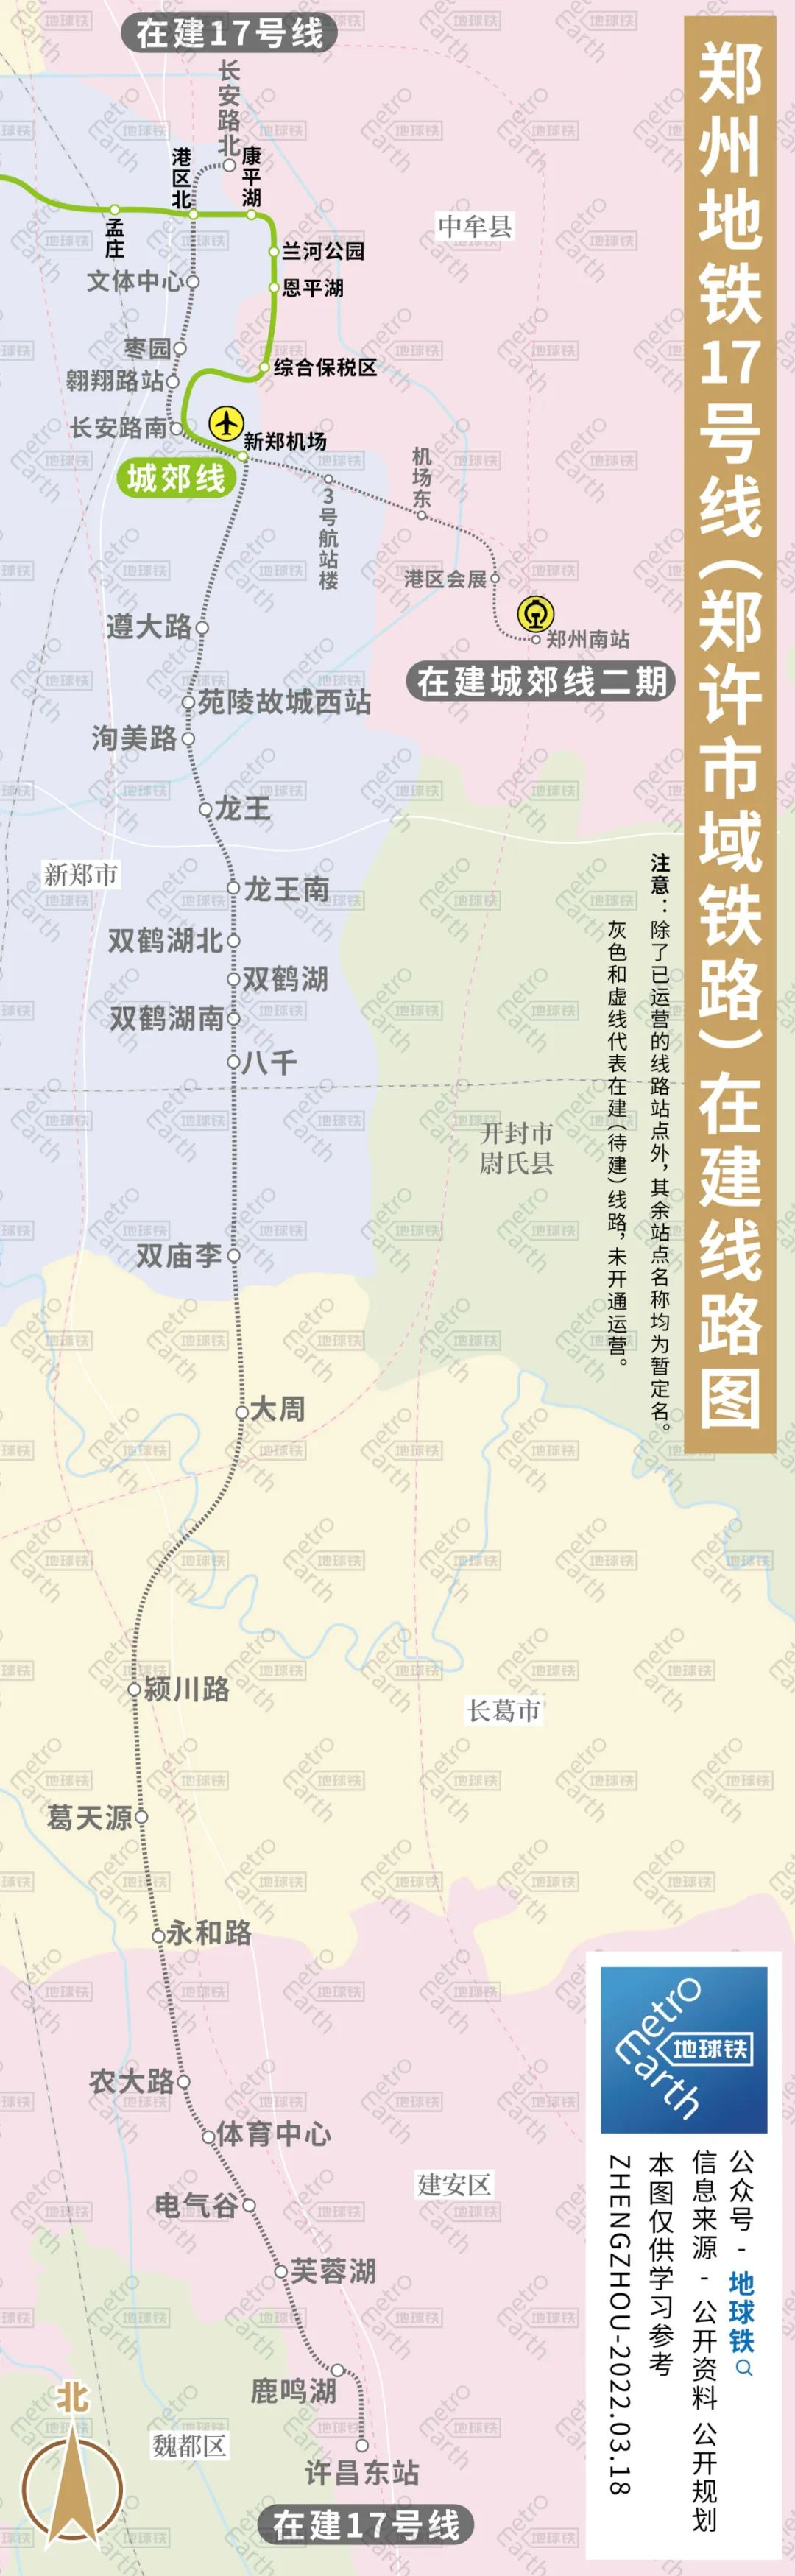 地铁郑州线路图最新_郑州地铁线路图_3号线地铁郑州线路图